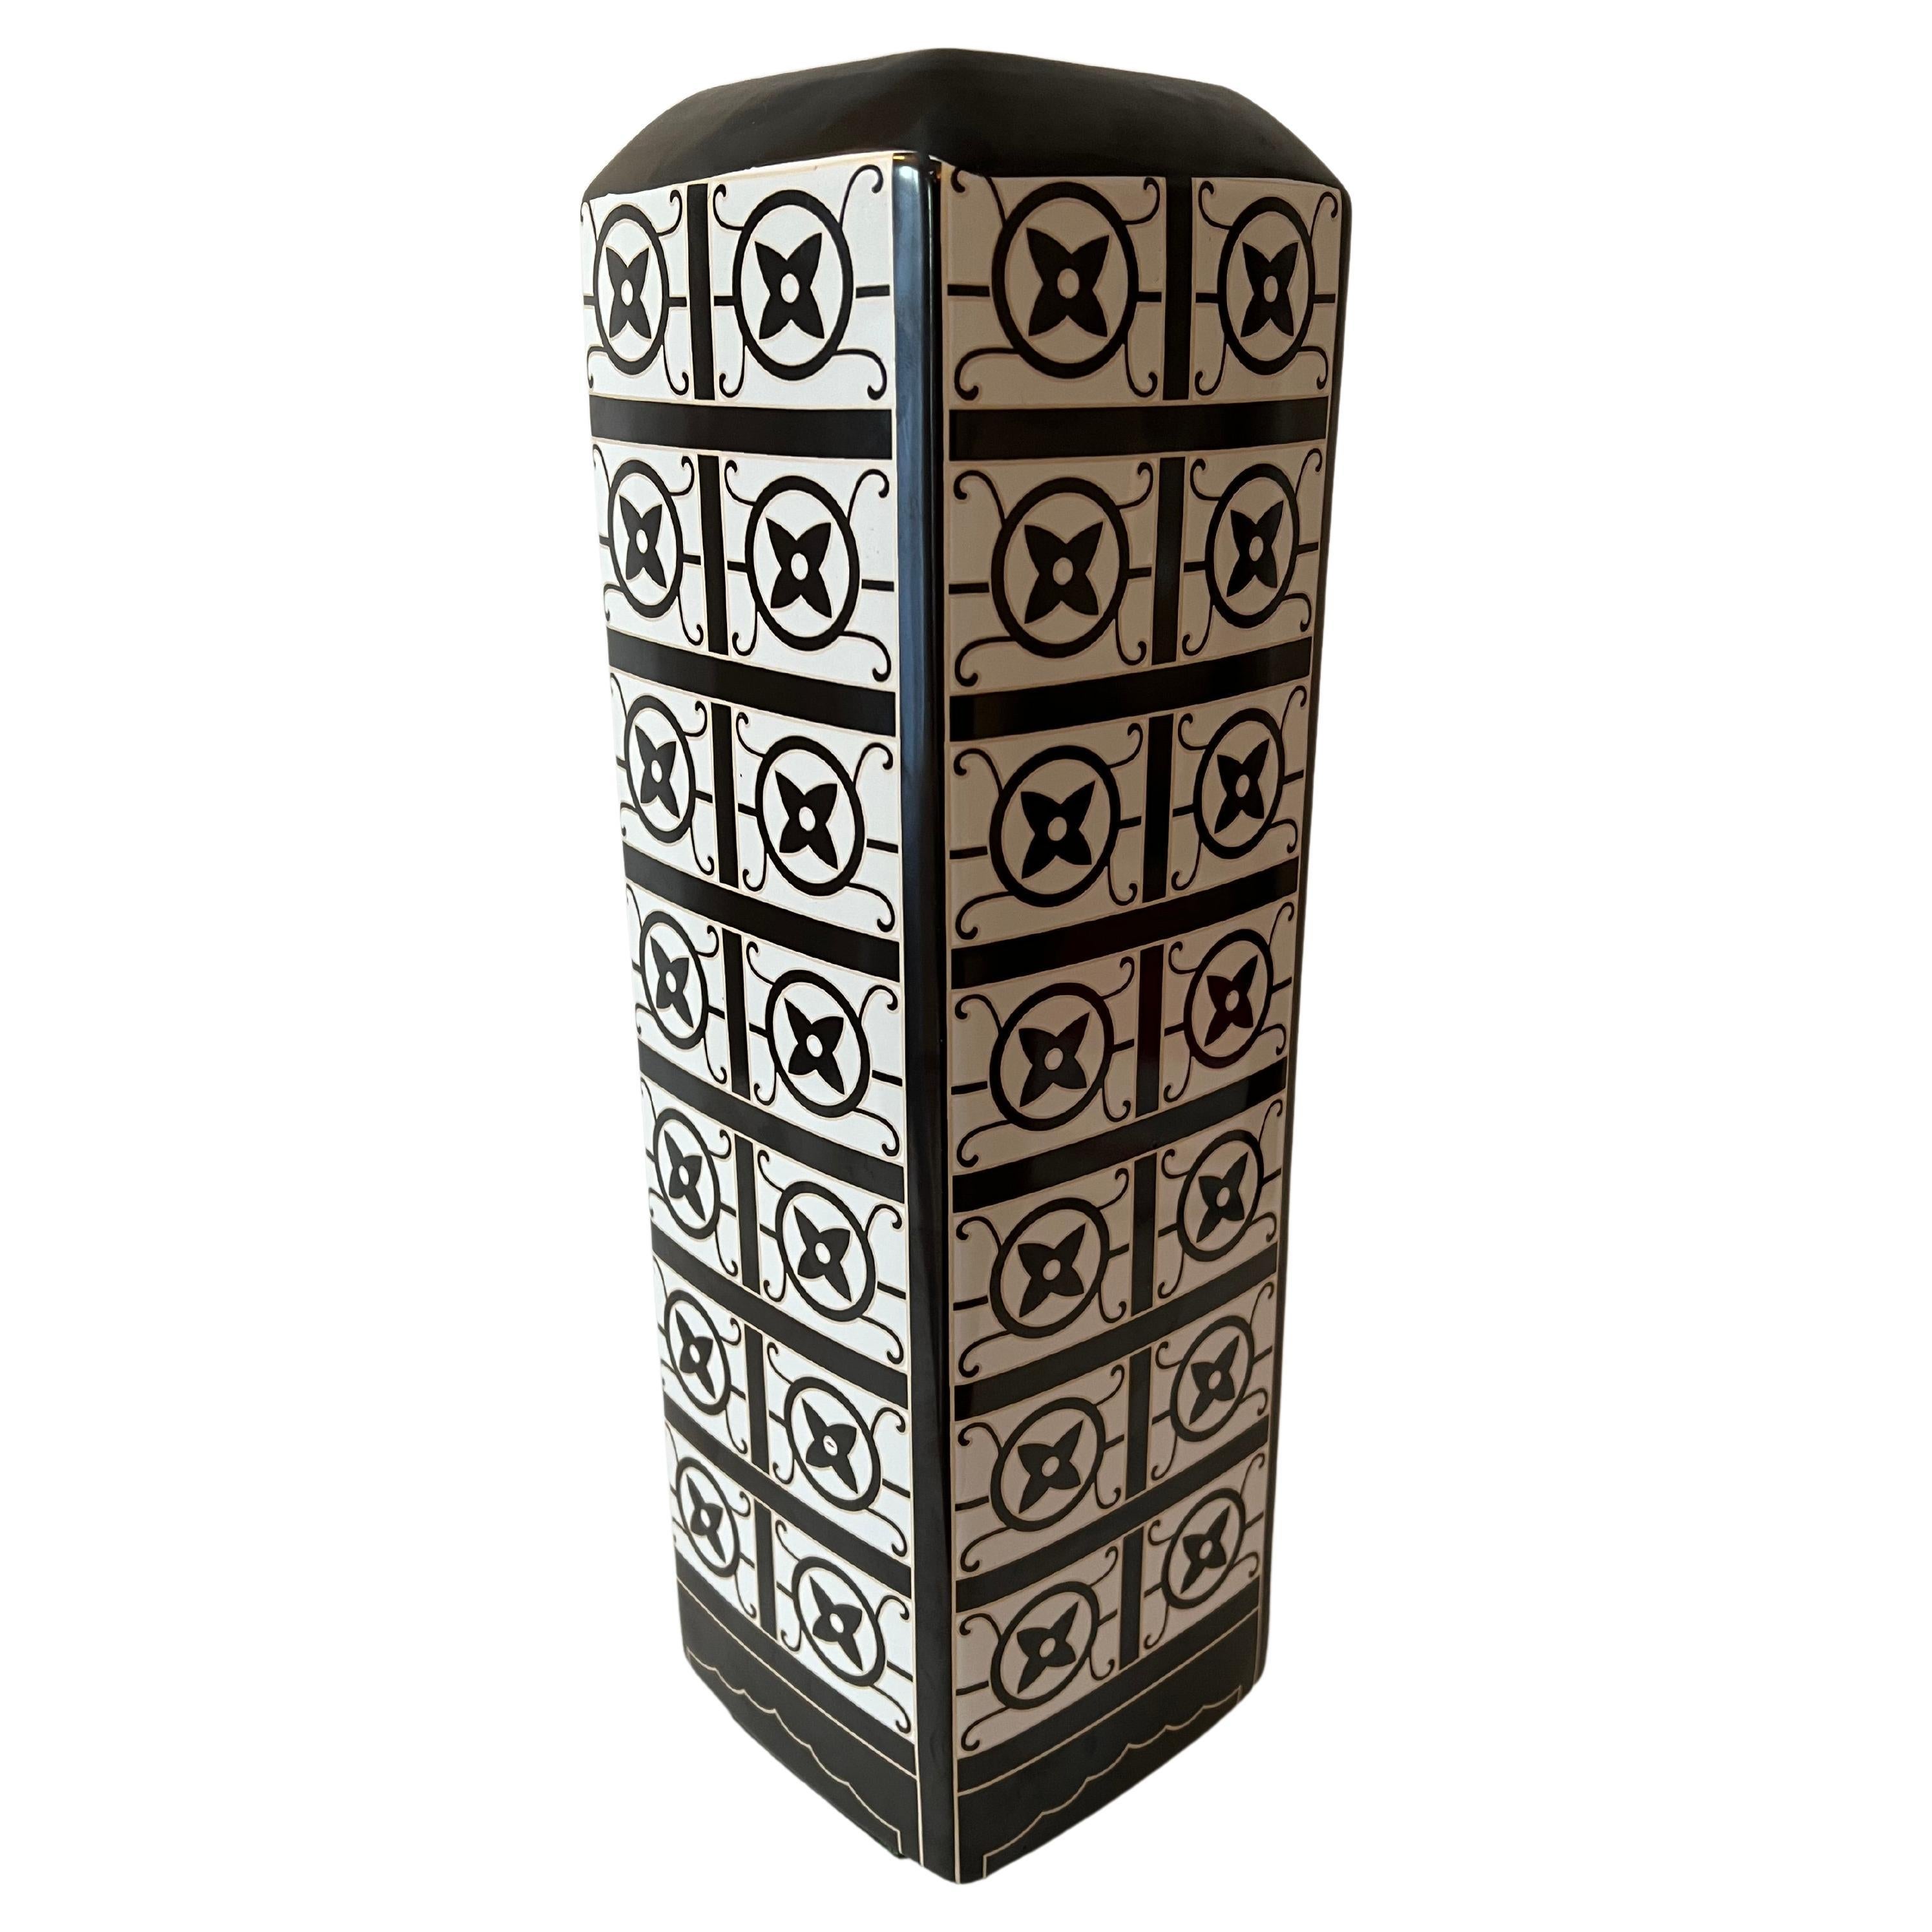 Vase en porcelaine avec des motifs noir/blanc et or du logo Louis Vuitton avec un motif de fleurs. Sa taille et sa largeur conviennent parfaitement à la hauteur d'une console, d'un bureau ou d'une table de cocktail. 

La hauteur, accompagnée d'un